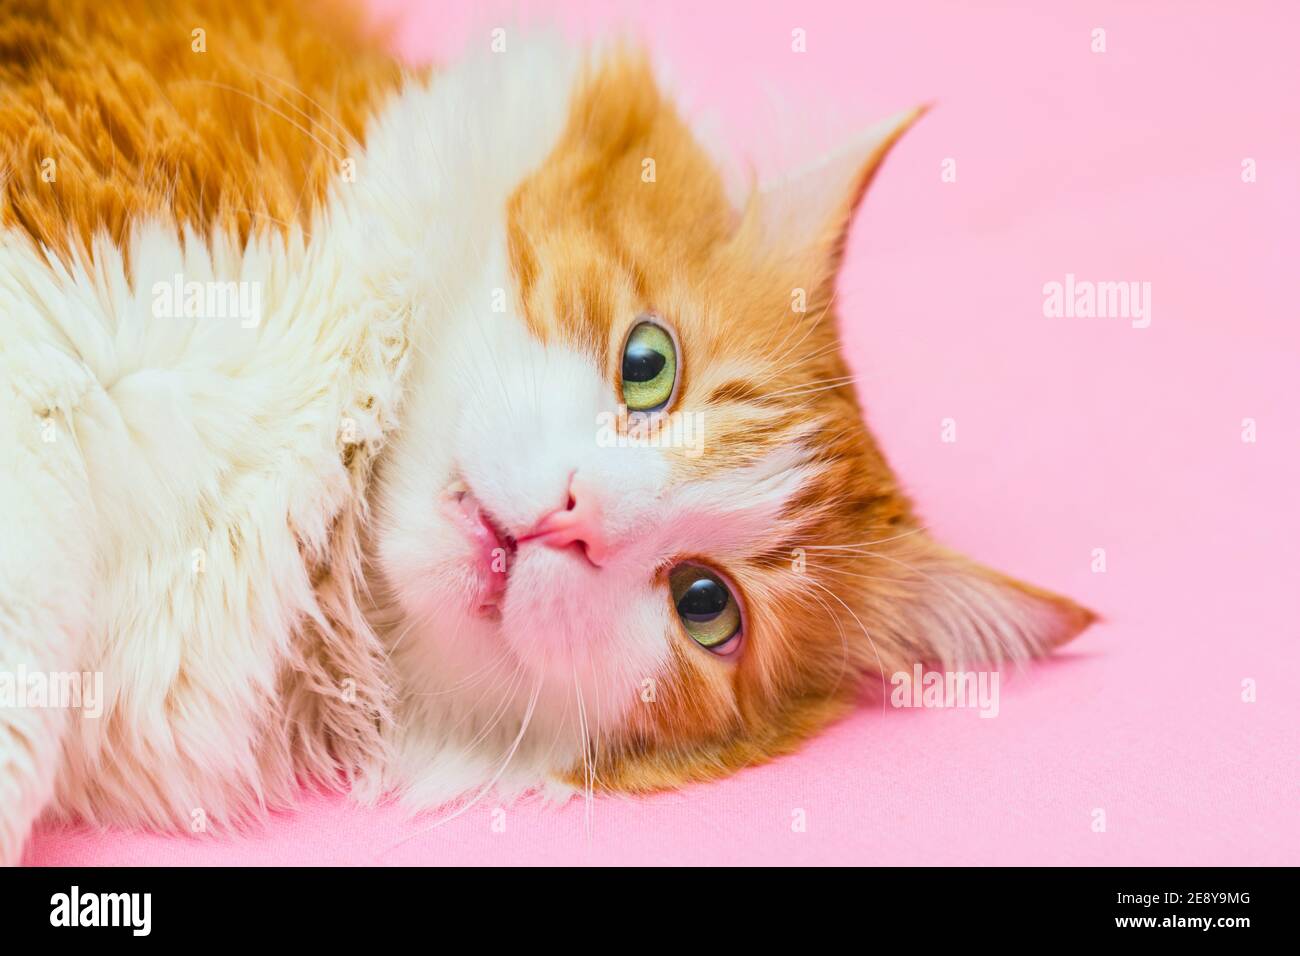 Le joli chat rouge adulte en état de choc repose sur le rose clair arrière-plan Banque D'Images